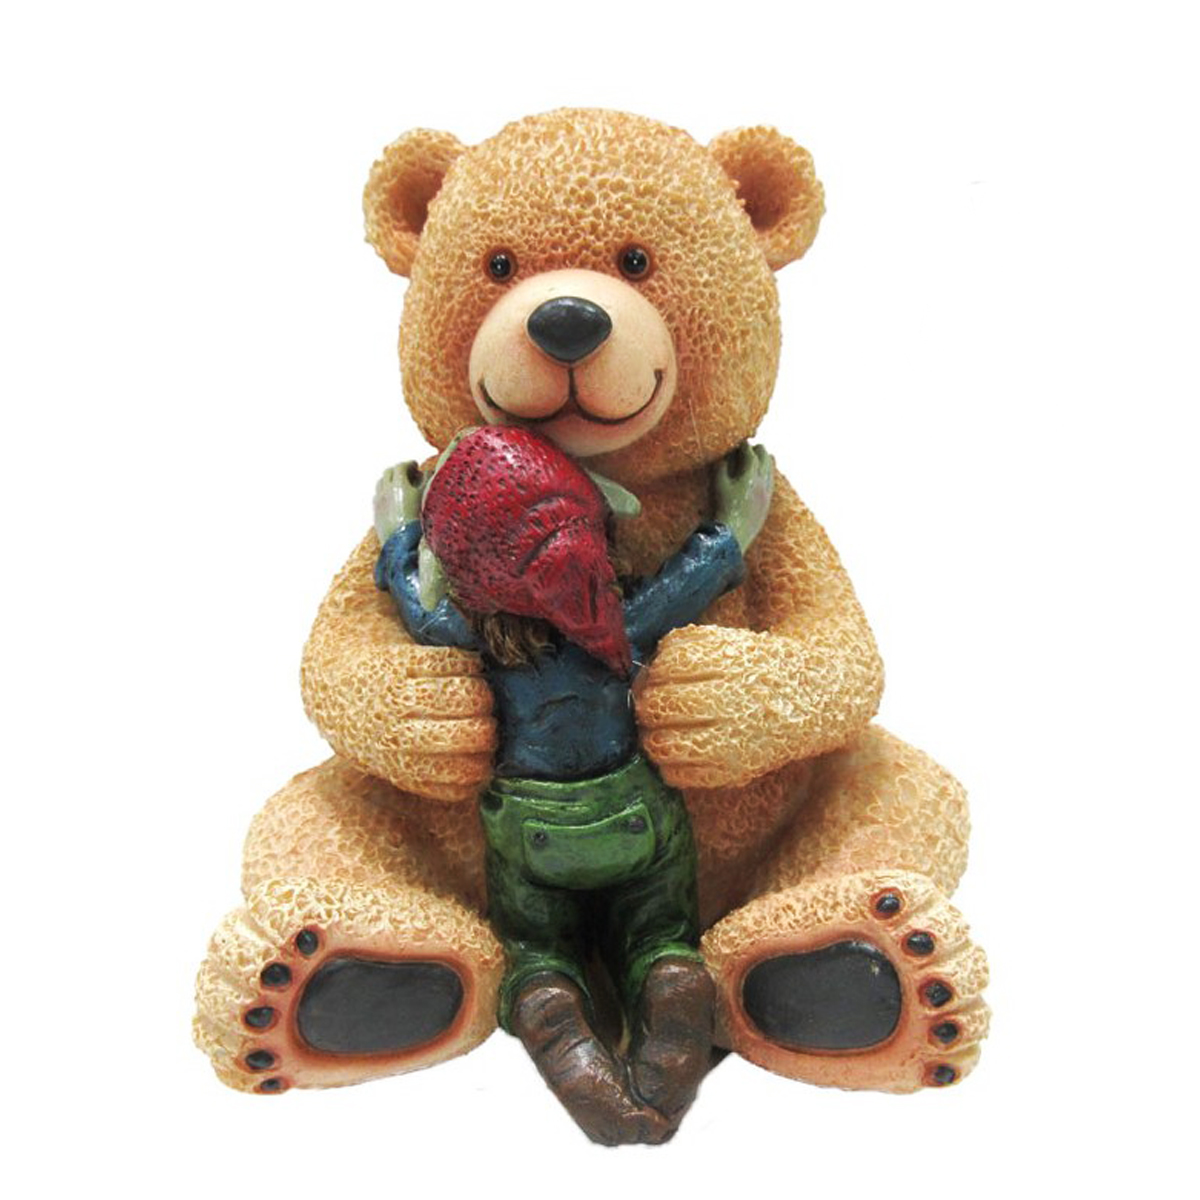 Figurine \'Pixie Musicien\' doudou teddy géant - 12 cm - [R7085]